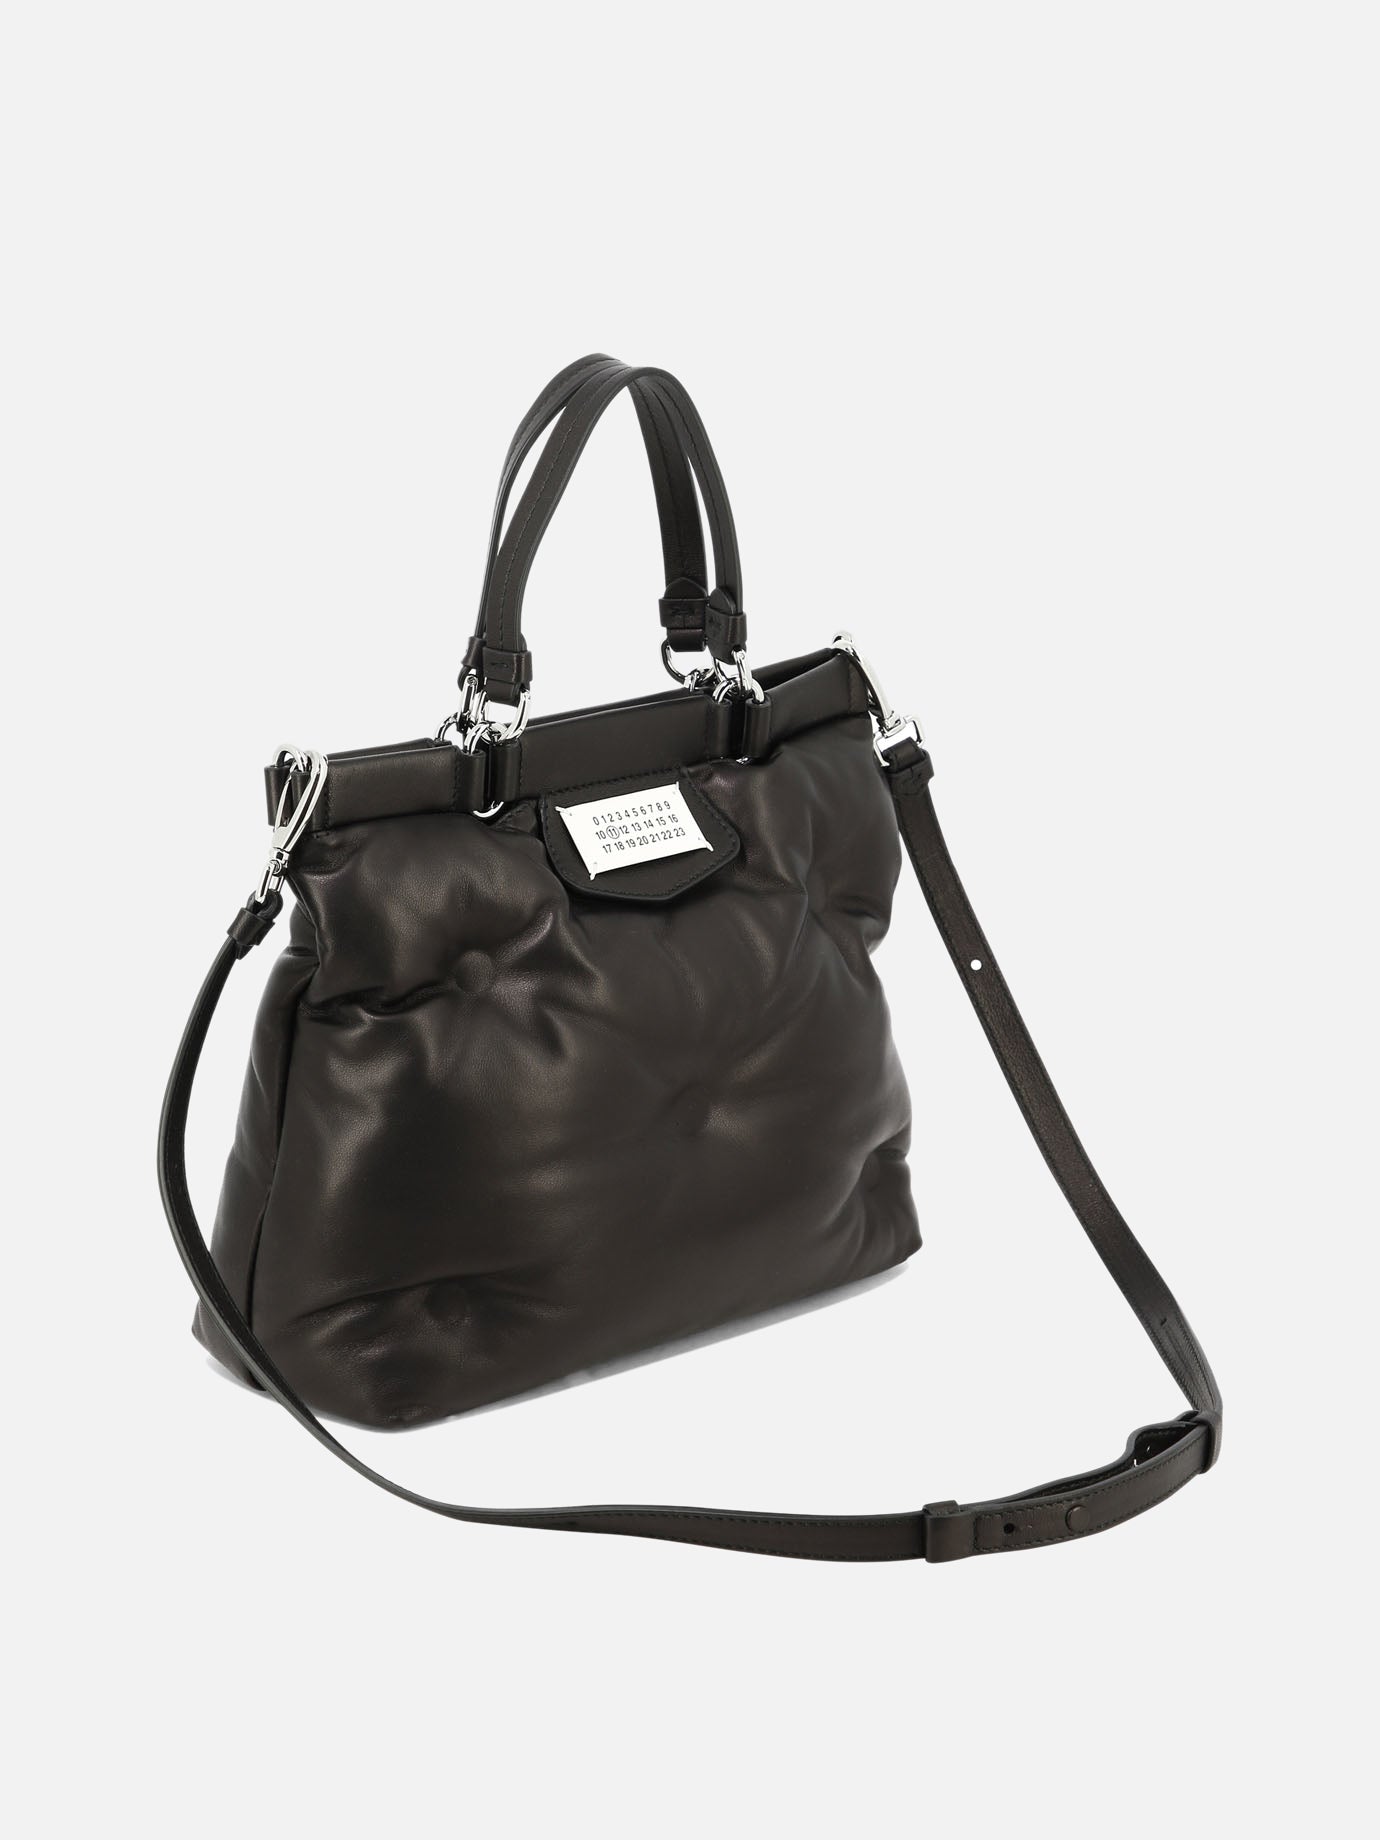 "Glam Small" handbag